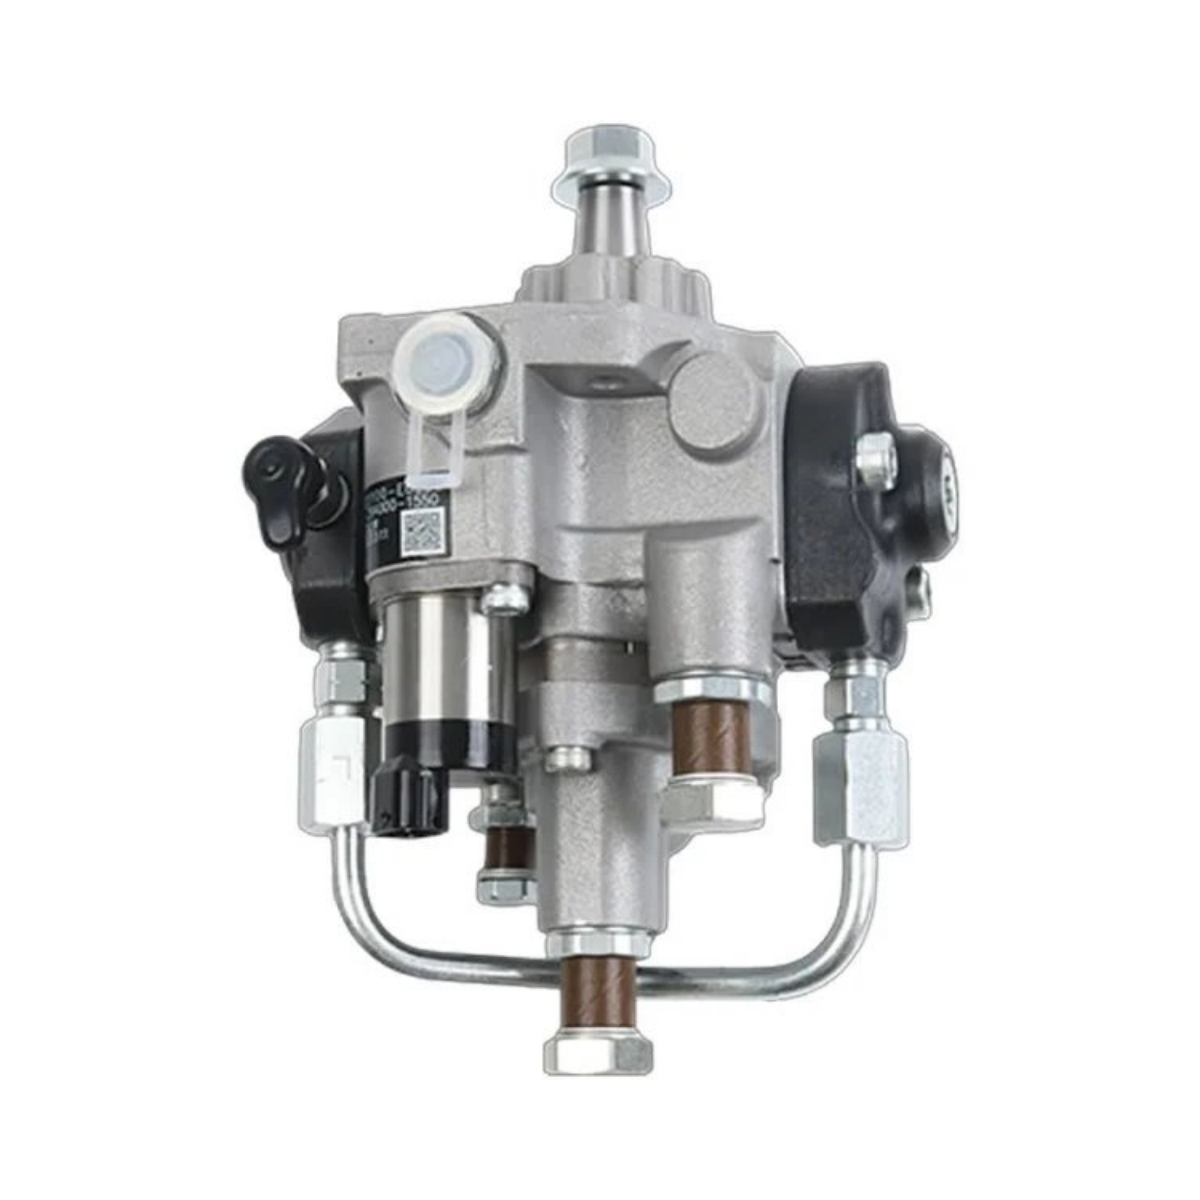 VH22100-E0580 294000-1550 Fuel Injection Pump for Kobelco 230SR-3 Excavator - Sinocmp